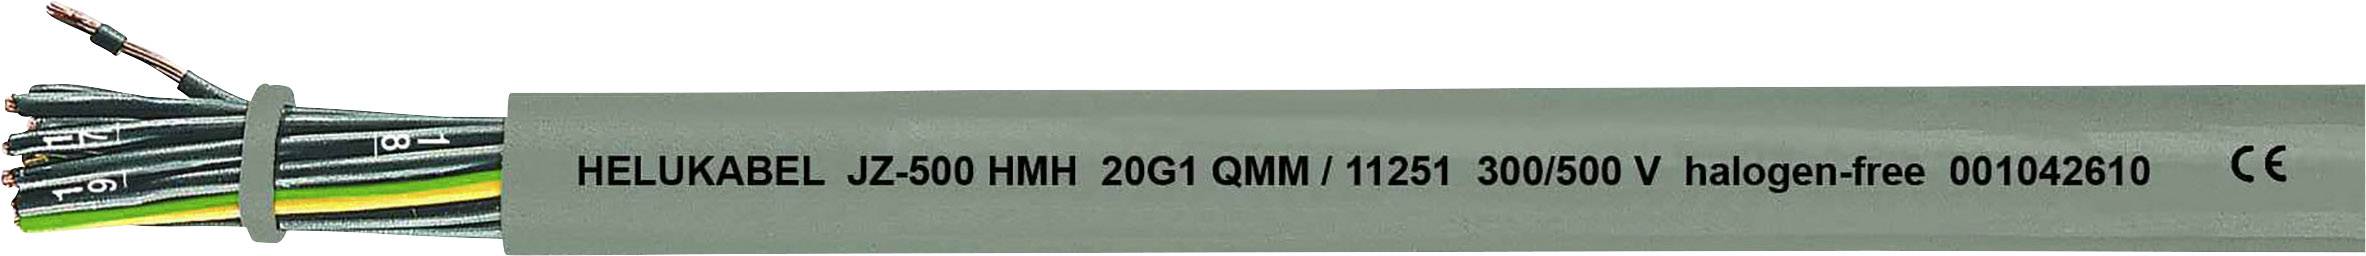 HELUKABEL JZ-500 HMH Steuerleitung 5 G 0.75 mm² Grau 11224-1000 1000 m